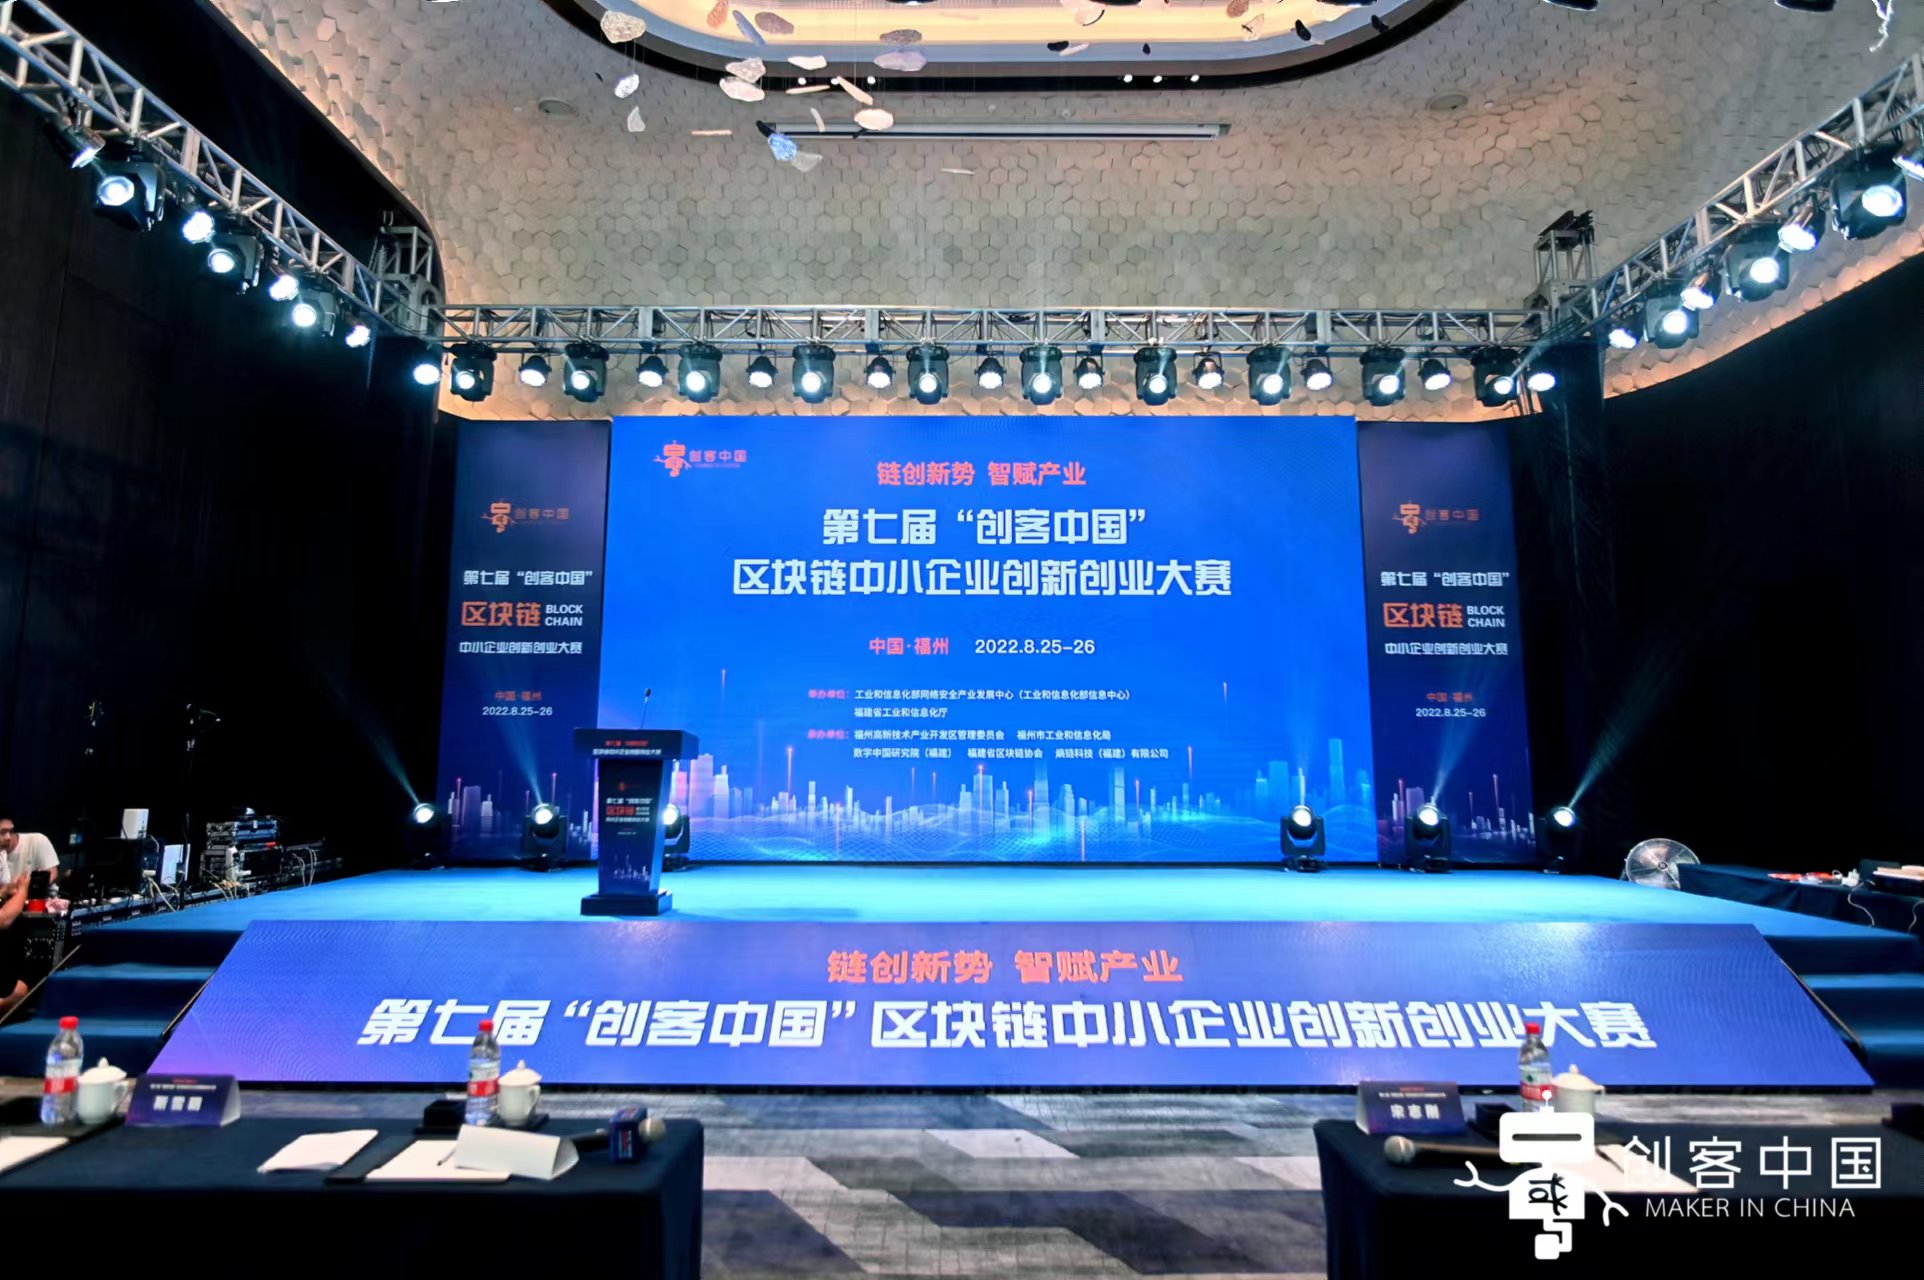 第七届“创客中国”区块链中小企业创新创业大赛颁奖典礼与第三届区块链产业与企业家国际峰会隆重举行